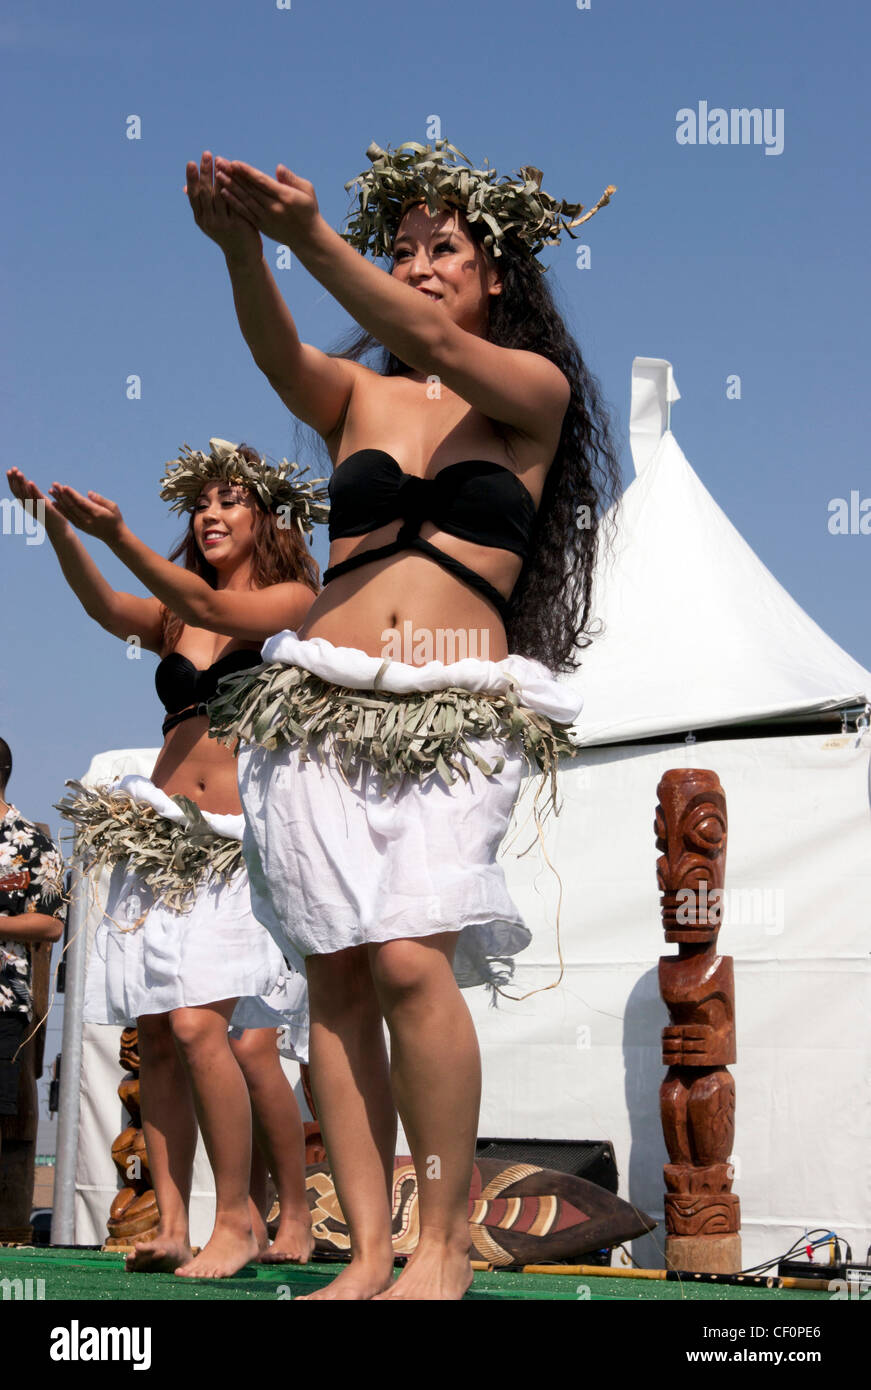 Les jeunes danseurs de hula performing on stage Banque D'Images